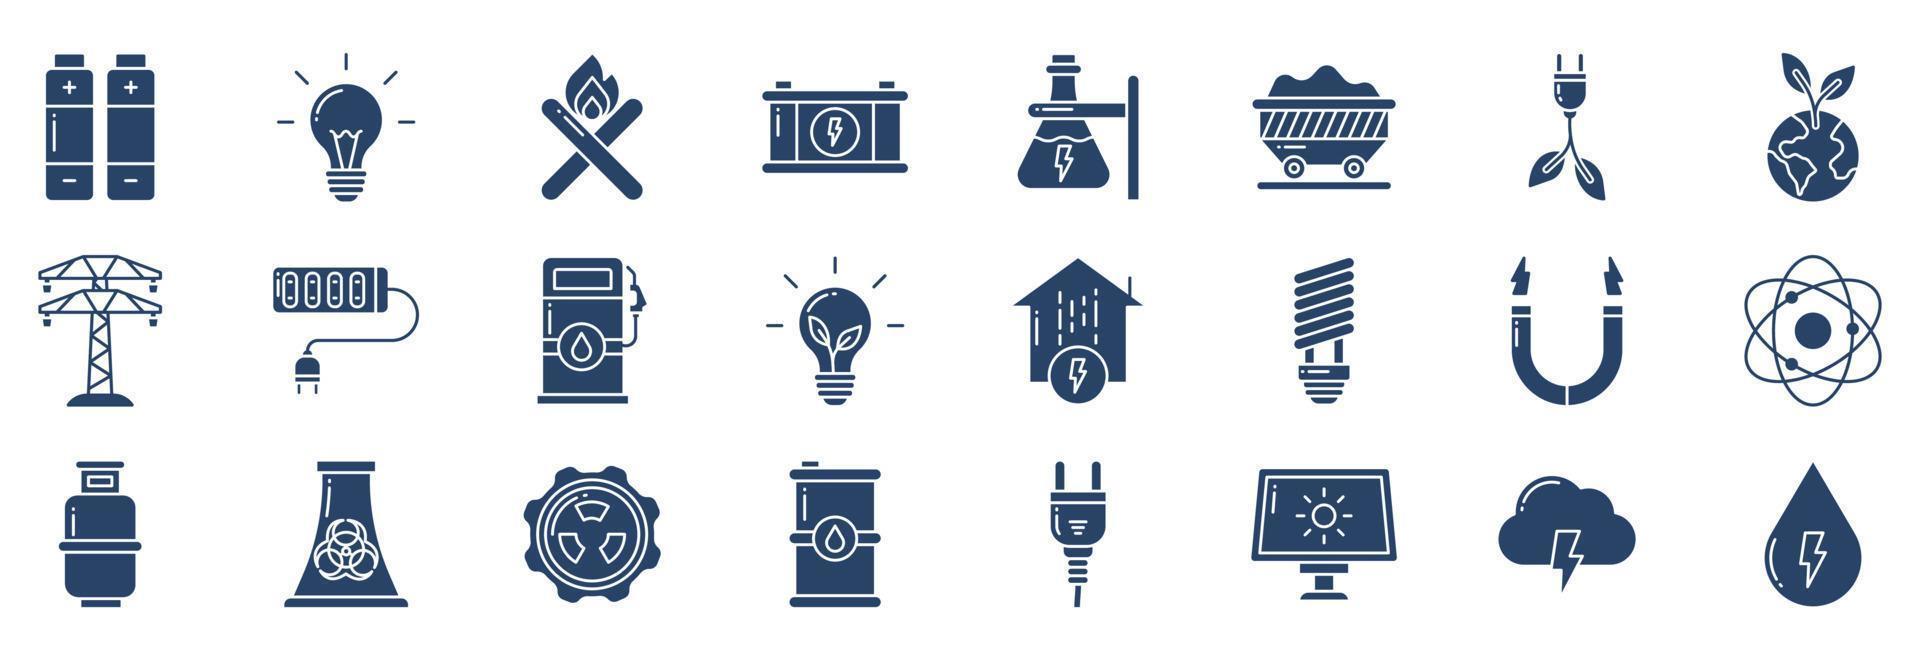 samling av ikoner relaterad till kraft och energi, Inklusive ikoner tycka om batteri, Glödlampa, elektrisk kraft, ekologi och Mer. vektor illustrationer, pixel perfekt uppsättning